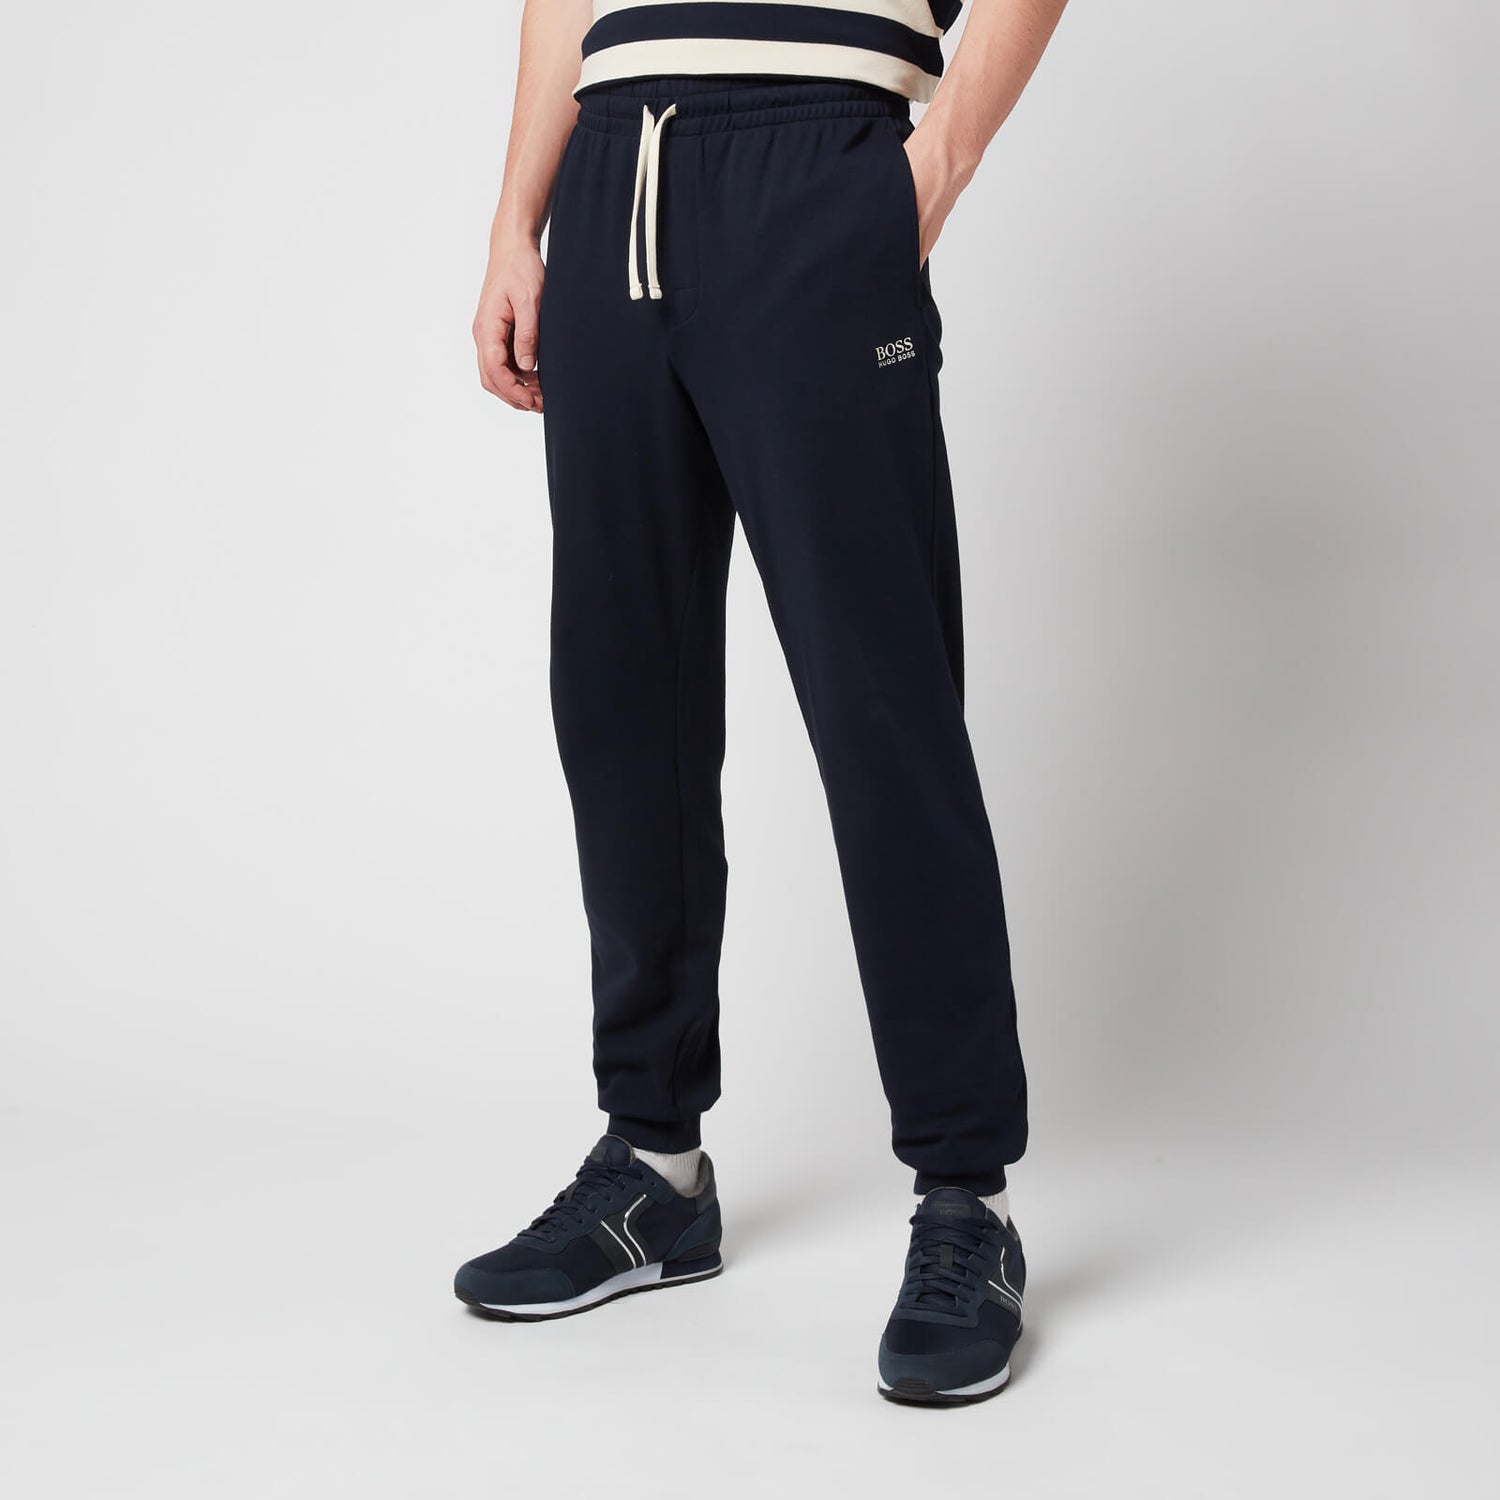 BOSS Bodywear Men's Stripe Jogging Bottoms - Dark Blue